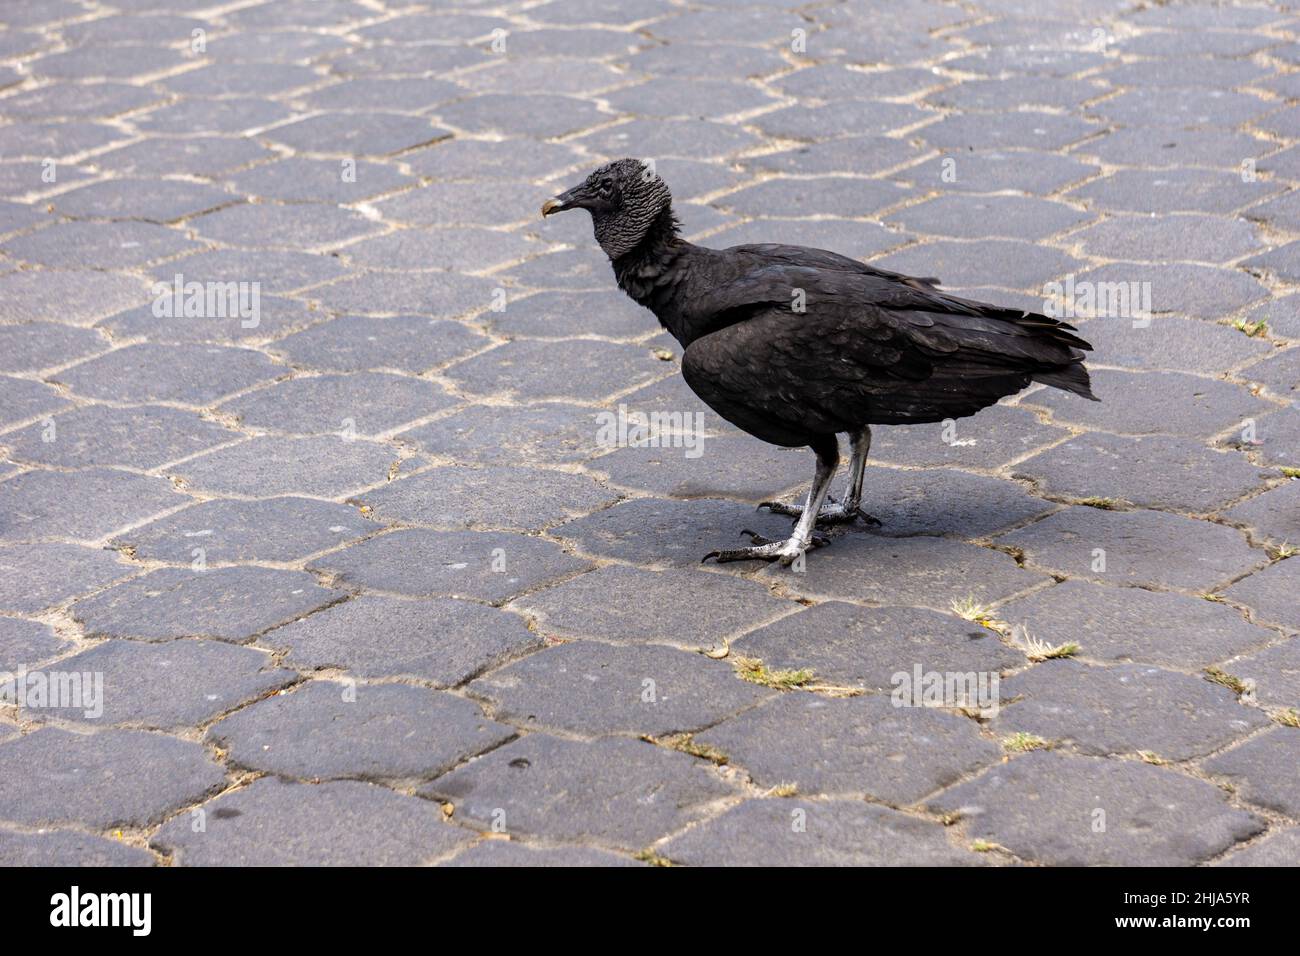 Avvoltoio nero, Coragyp atratus, cammina su una strada di cemento, alla ricerca di frammenti di carne. Questi uccelli servono come pulitori di strada. Foto Stock